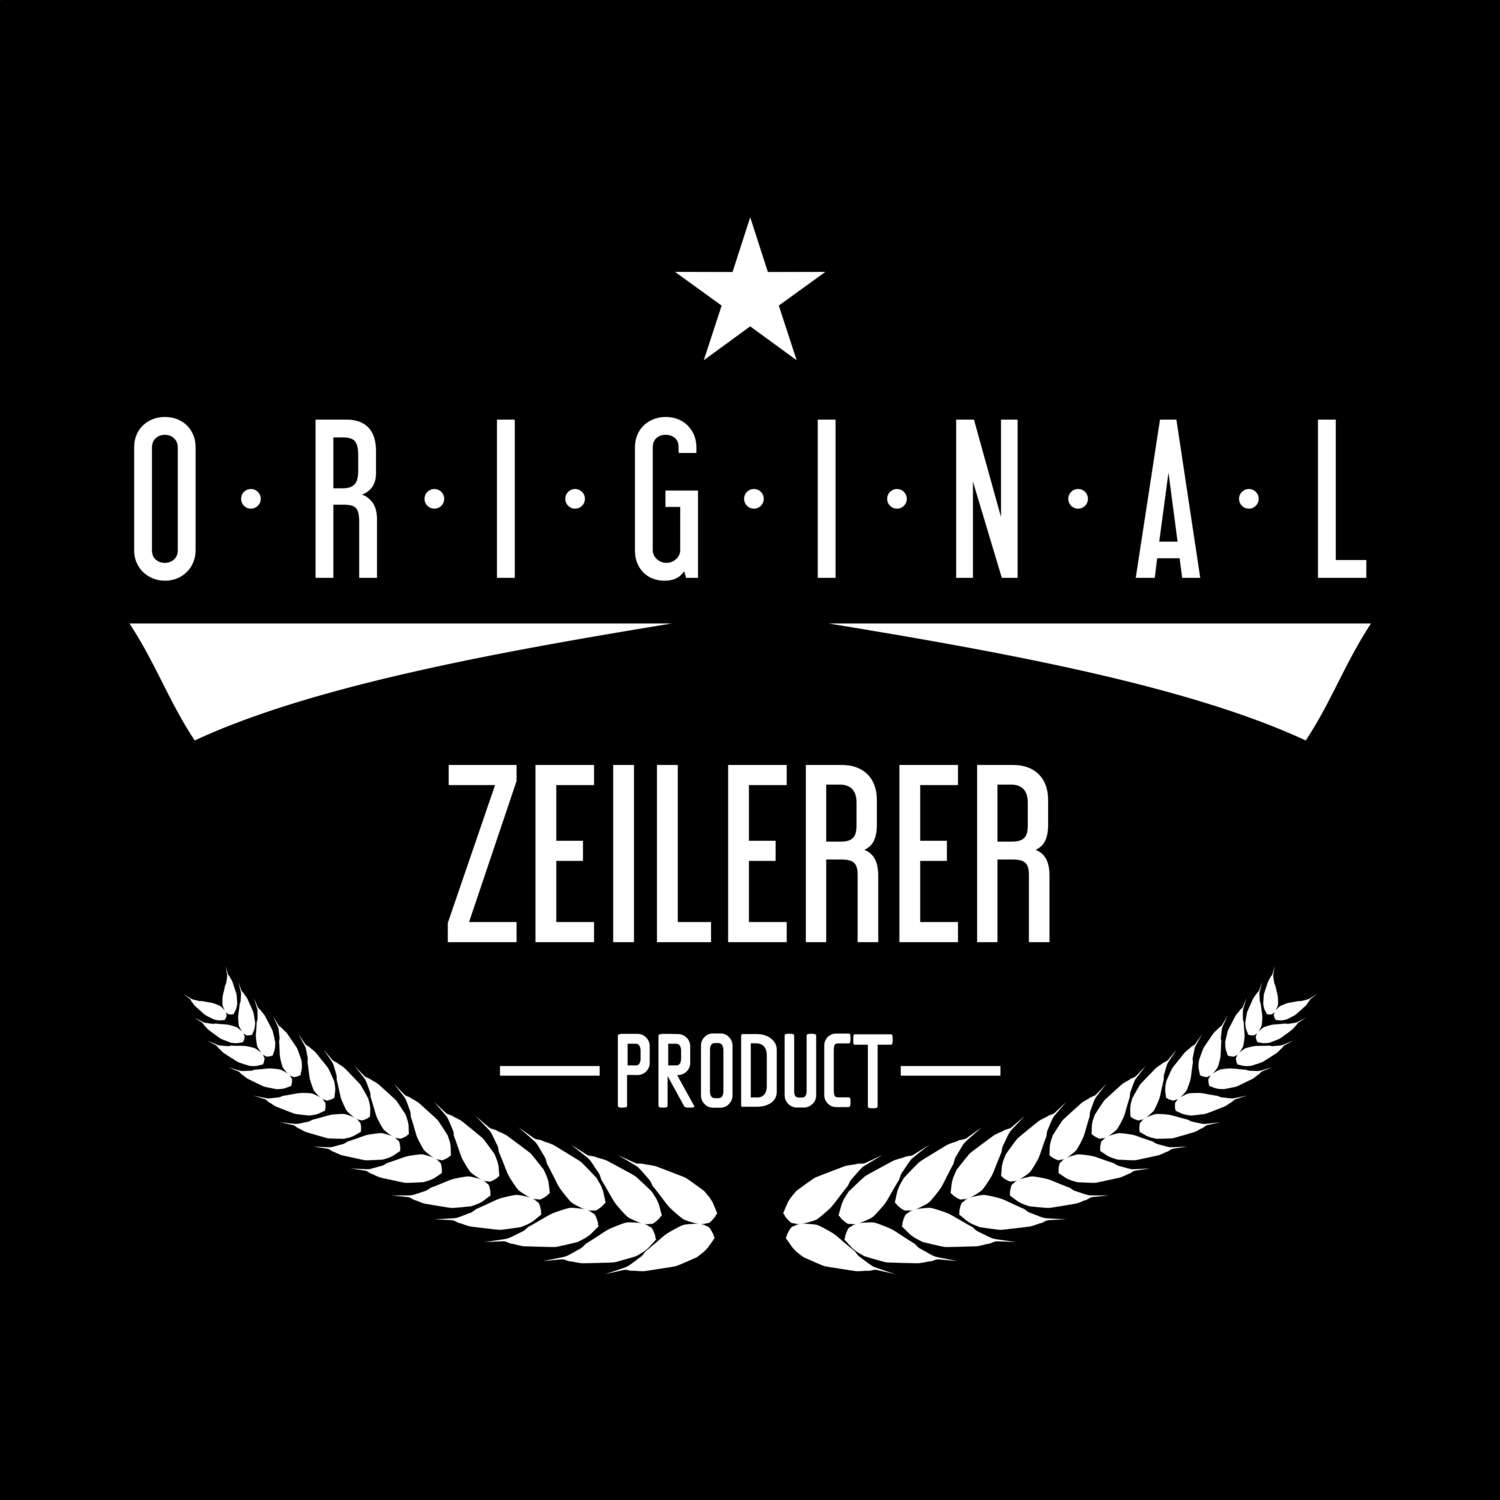 Zeilerer T-Shirt »Original Product«